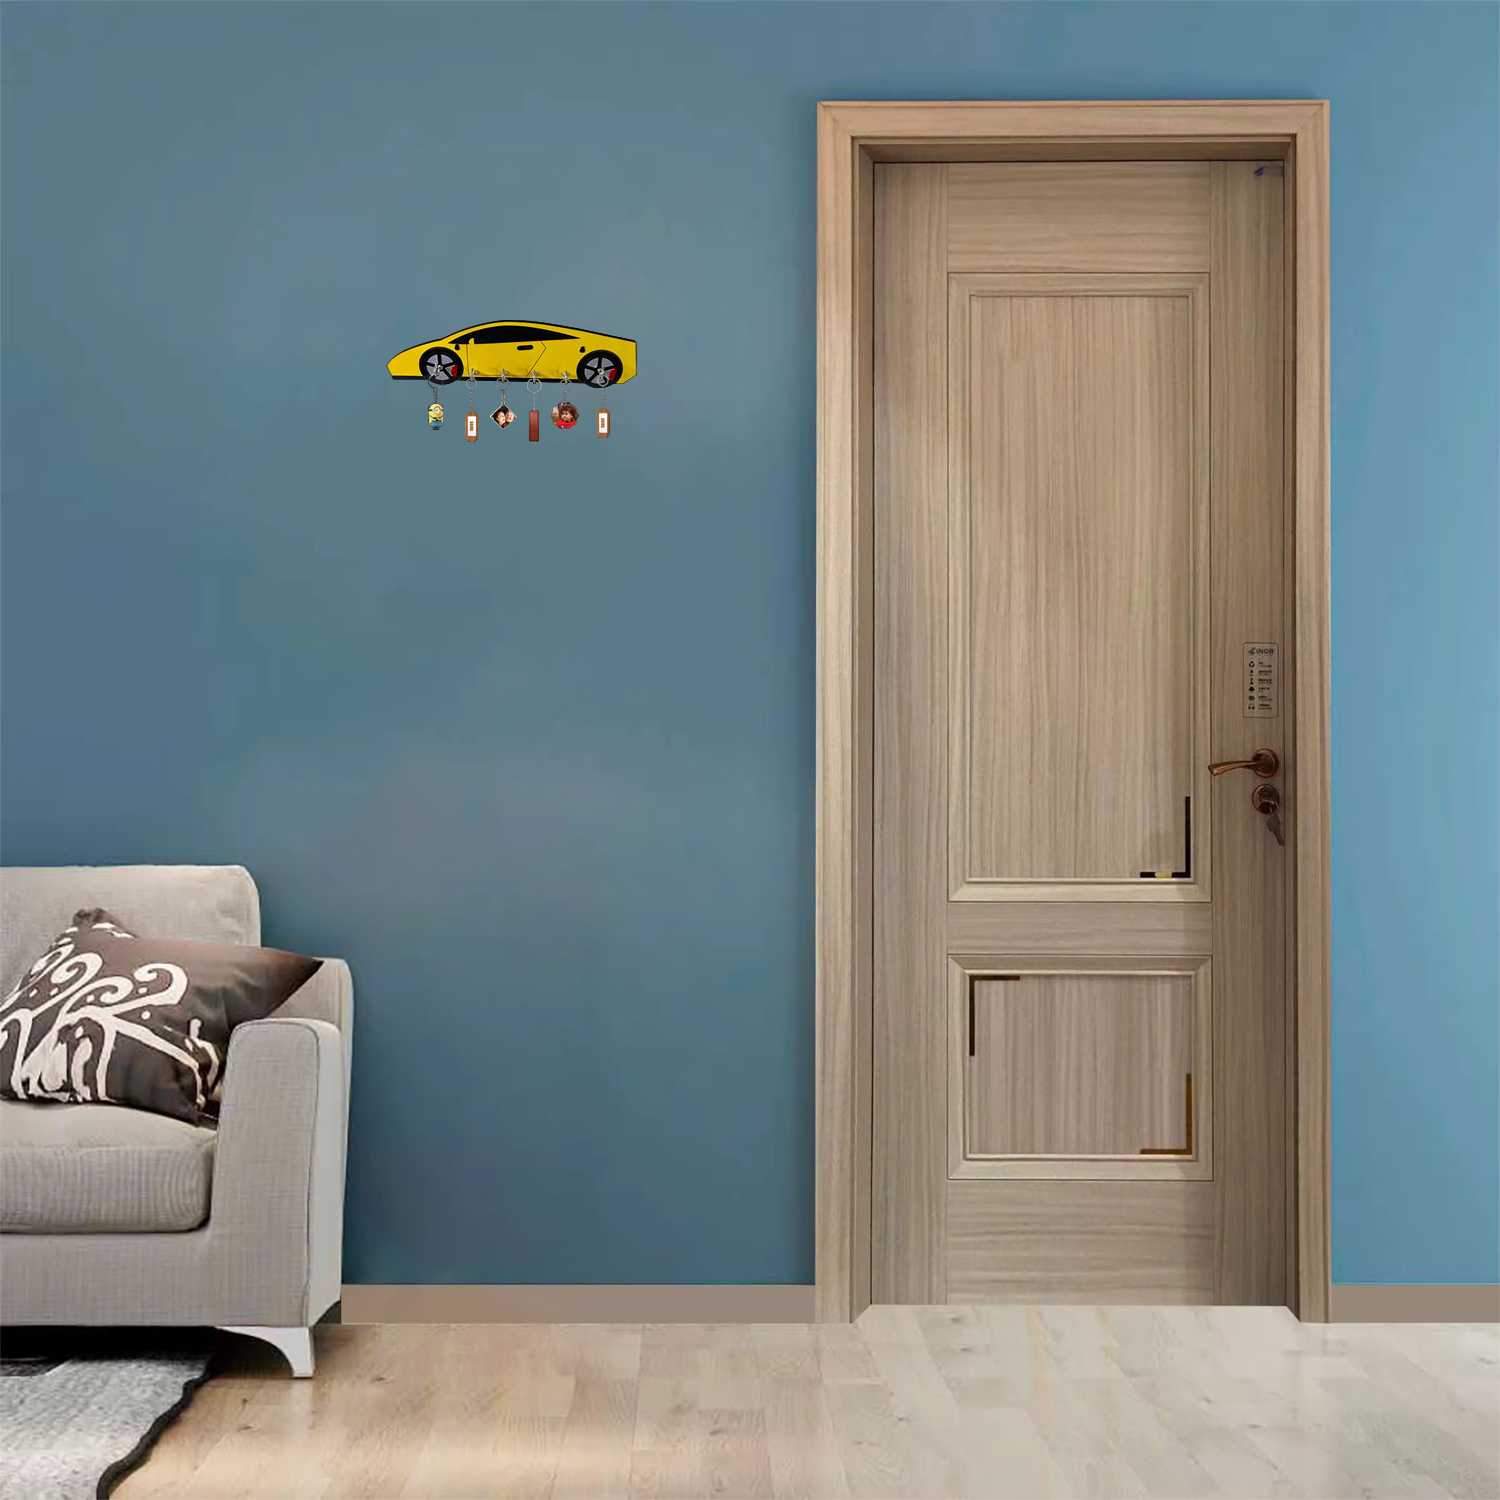 Car Wooden Key Holder For Decor / Living Room